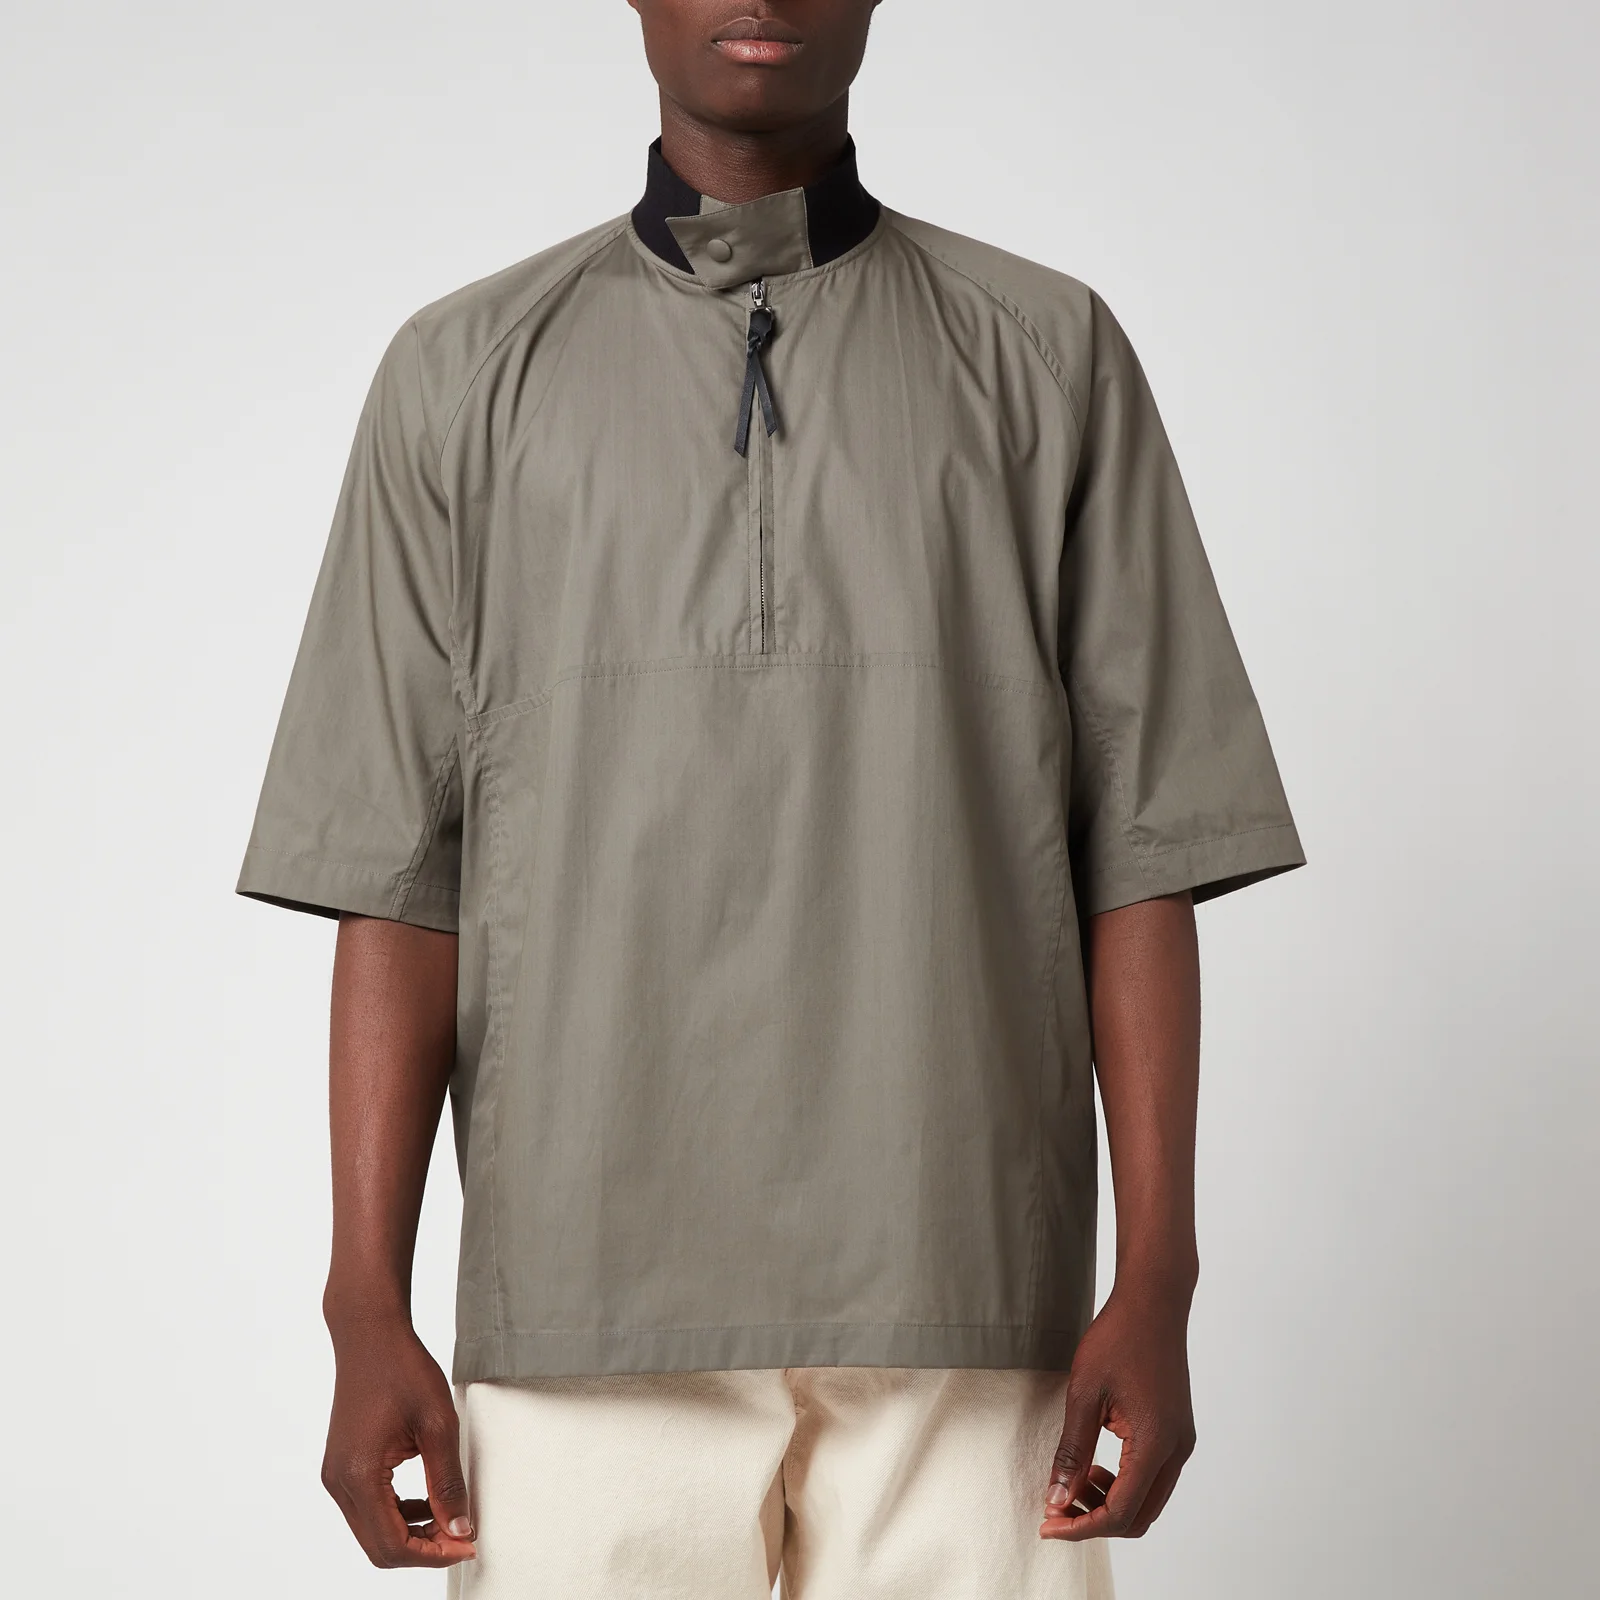 Ferragamo Men's Short Sleeve Zip Shirt - Grey/Brown Image 1